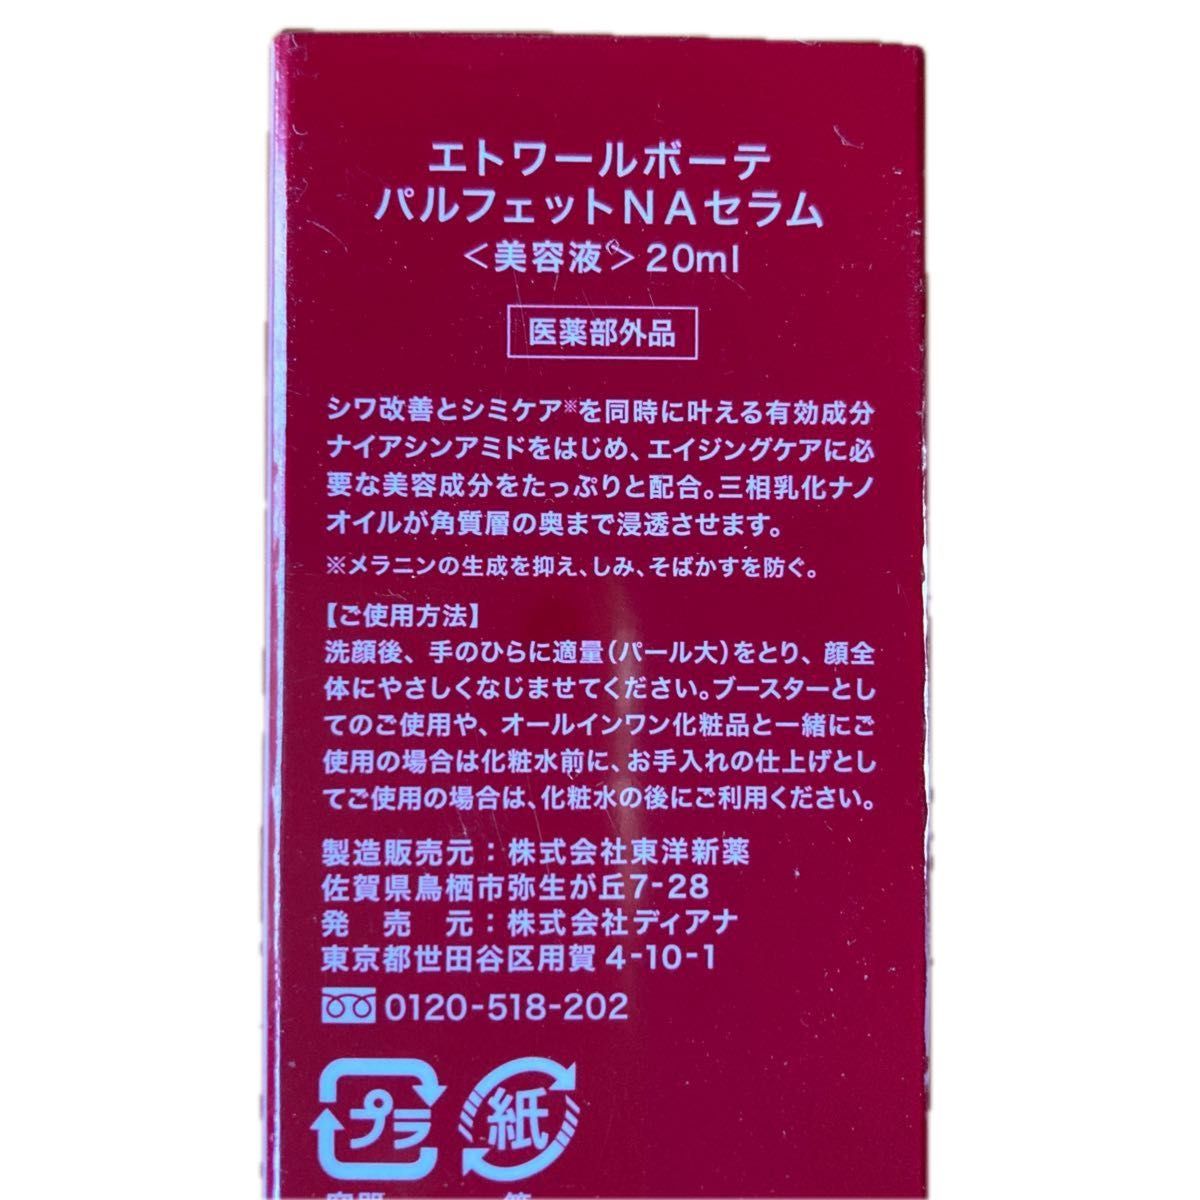 パルフェットNAセラム しわ改善 美容液 日本製 20ml